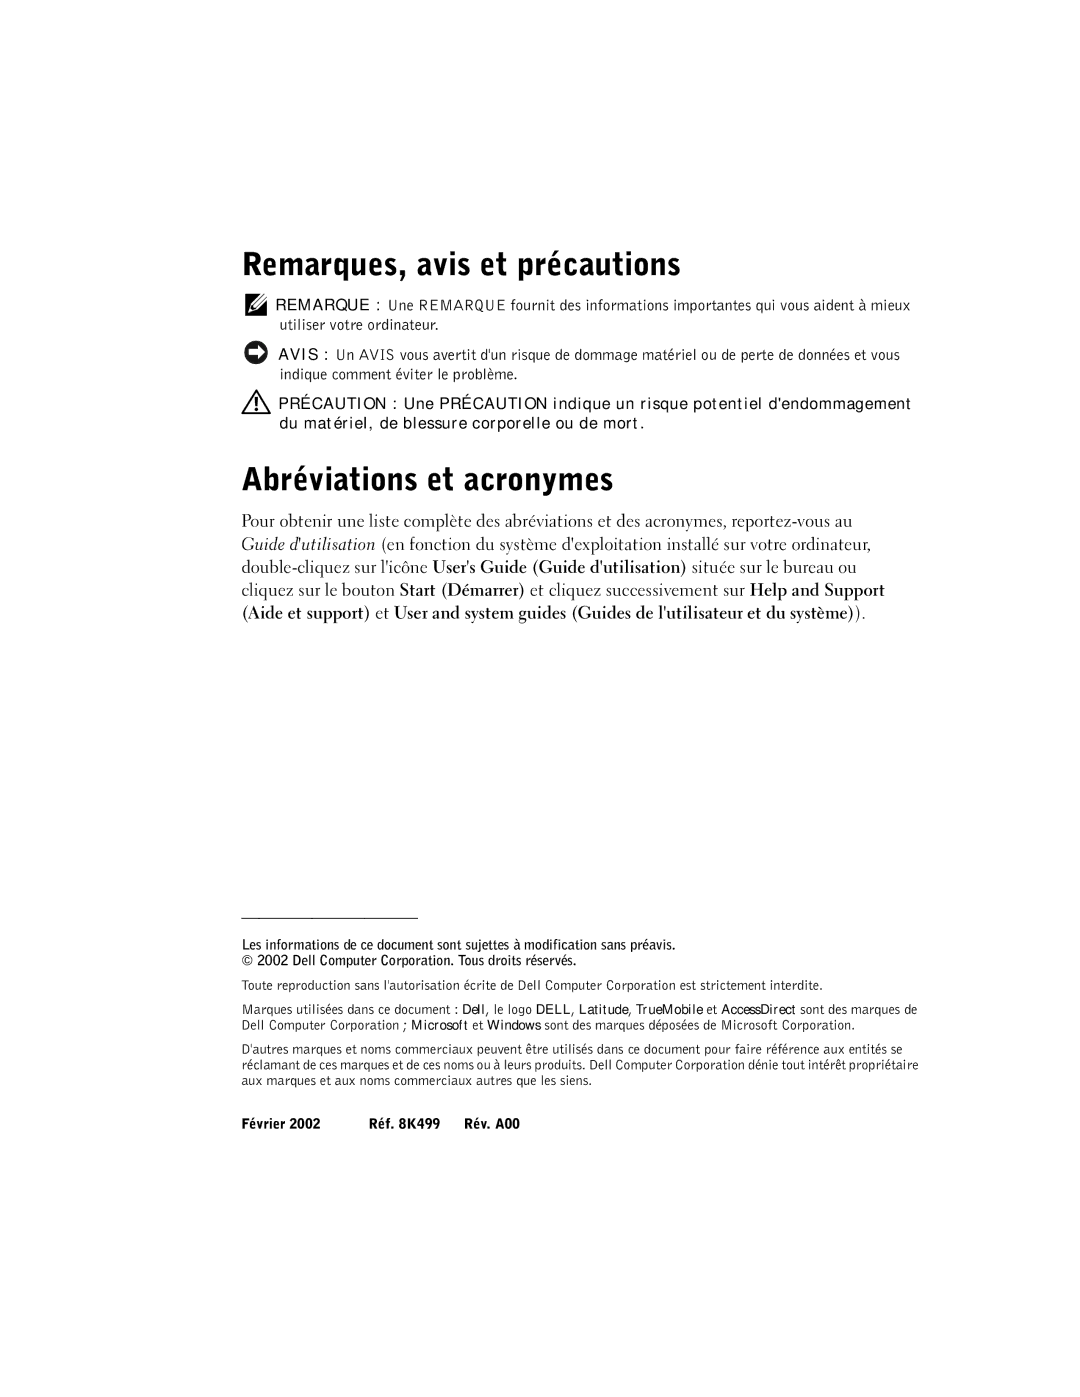 LeapFrog PP03S manual Remarques, avis et précautions, Abréviations et acronymes 